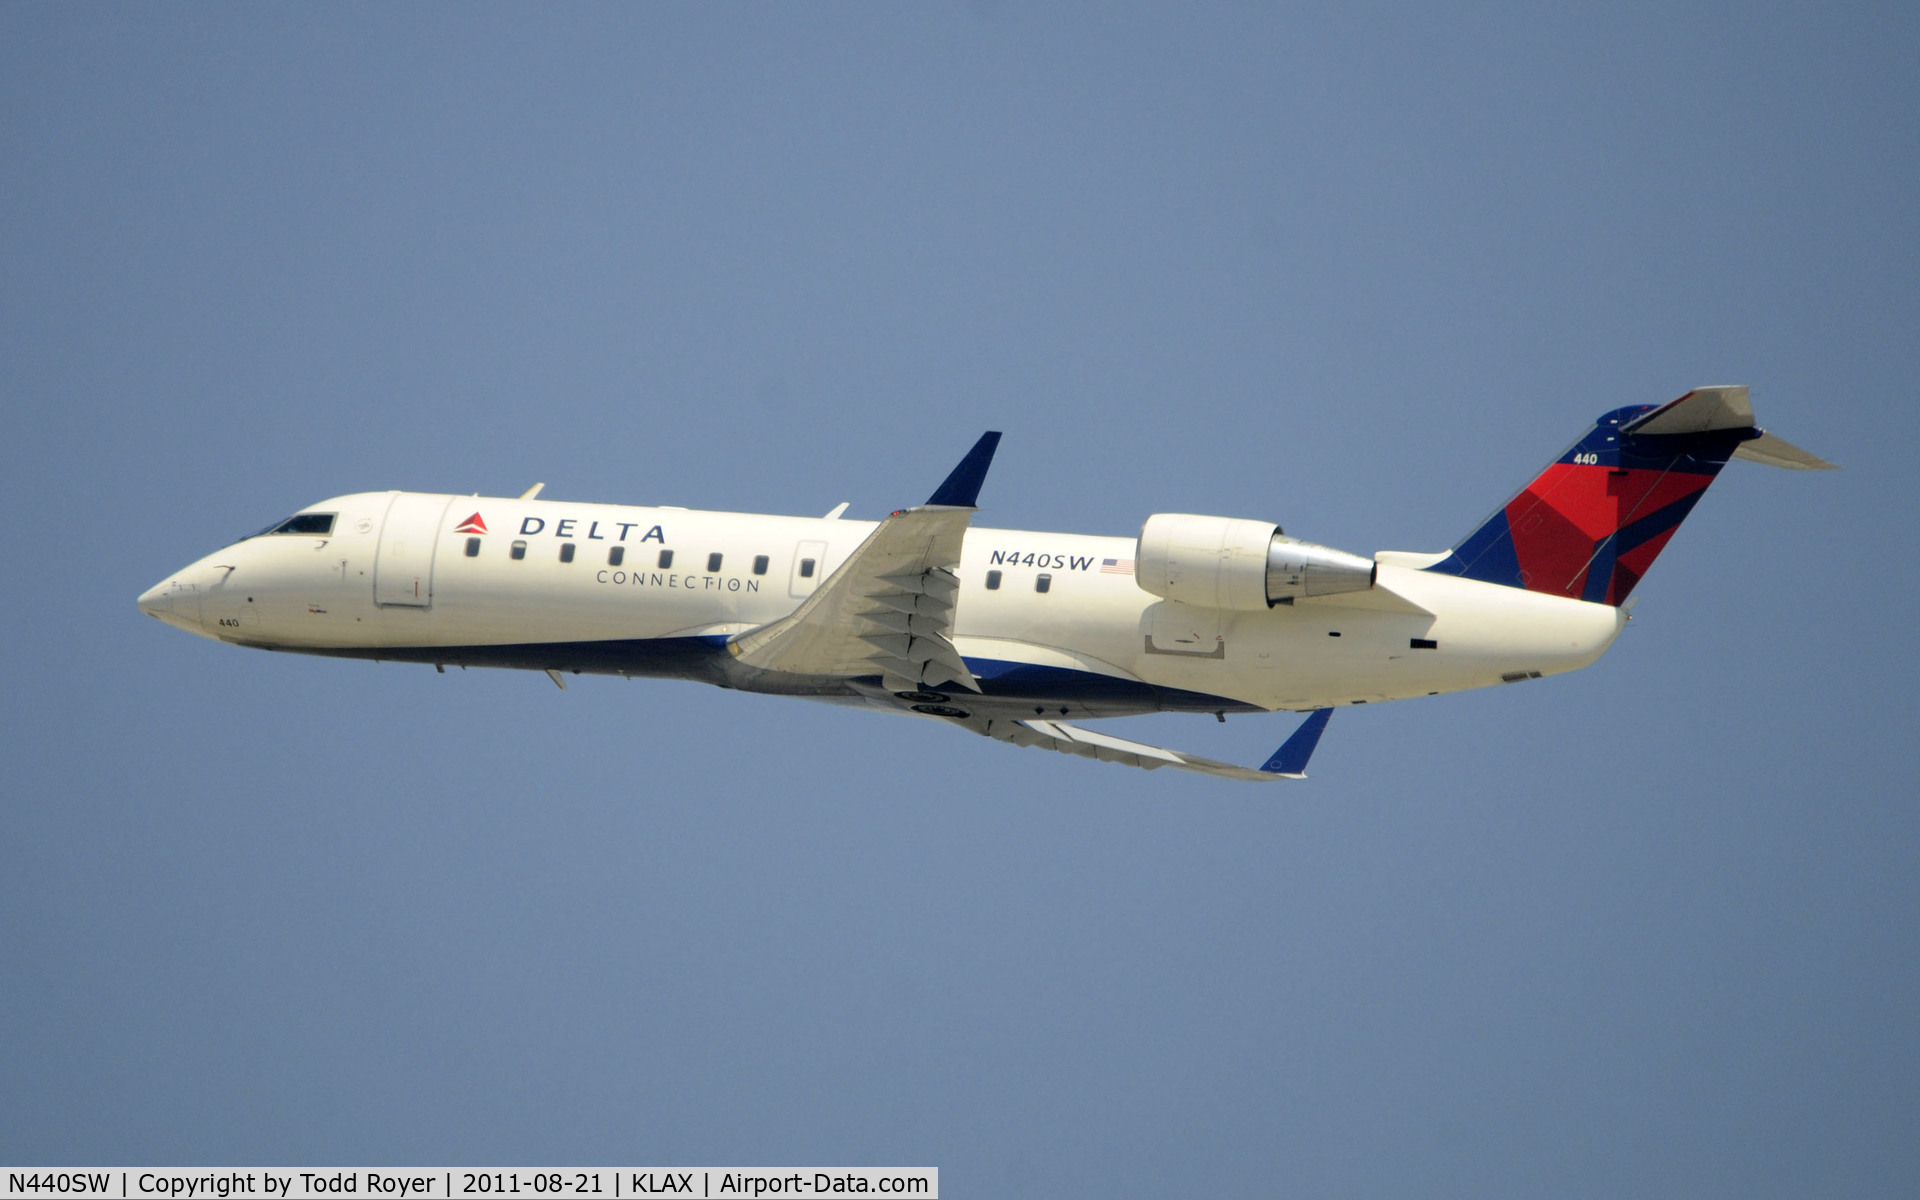 N440SW, 2001 Bombardier CRJ-200LR (CL-600-2B19) C/N 7589, Delta